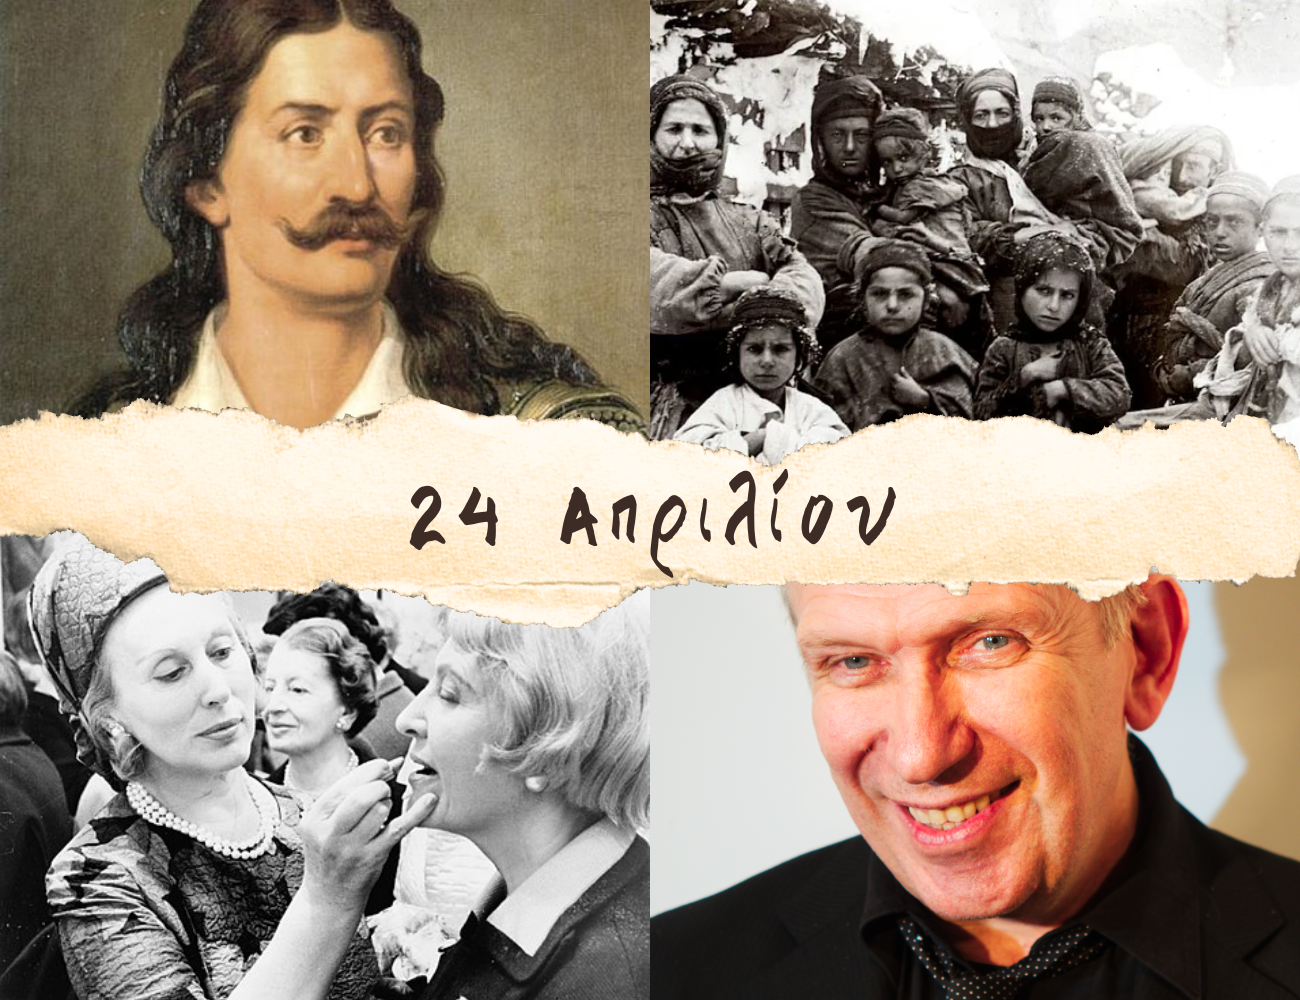 10 γεγονότα που συνέβησαν σαν σήμερα, 24 Απριλίου. Αθανάσιος Διάκος, Γενοκτονία Αρμενίων, Γκοτιέ και Εστέ Λόντερ